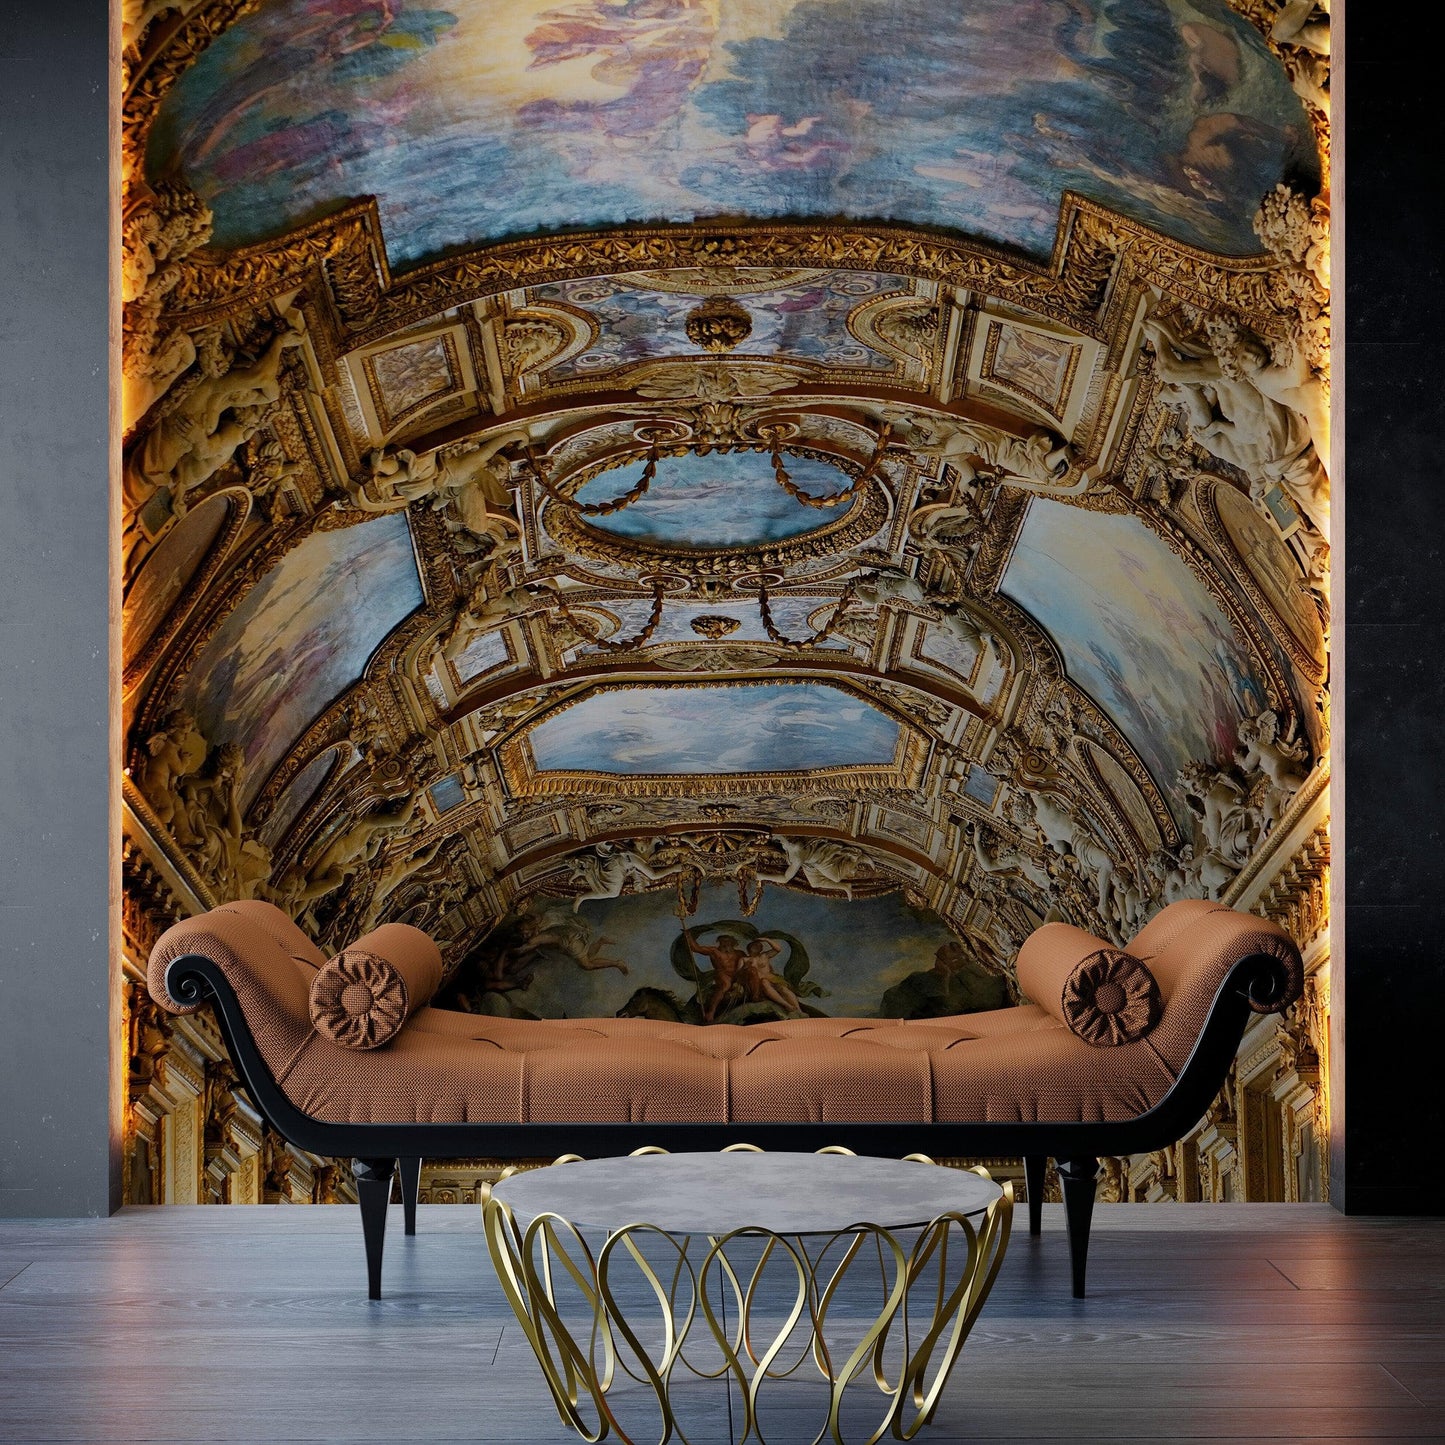 Art The Louvre Museum Paris France Golden Ceilings Wallpaper. Musee du Louvre #6600